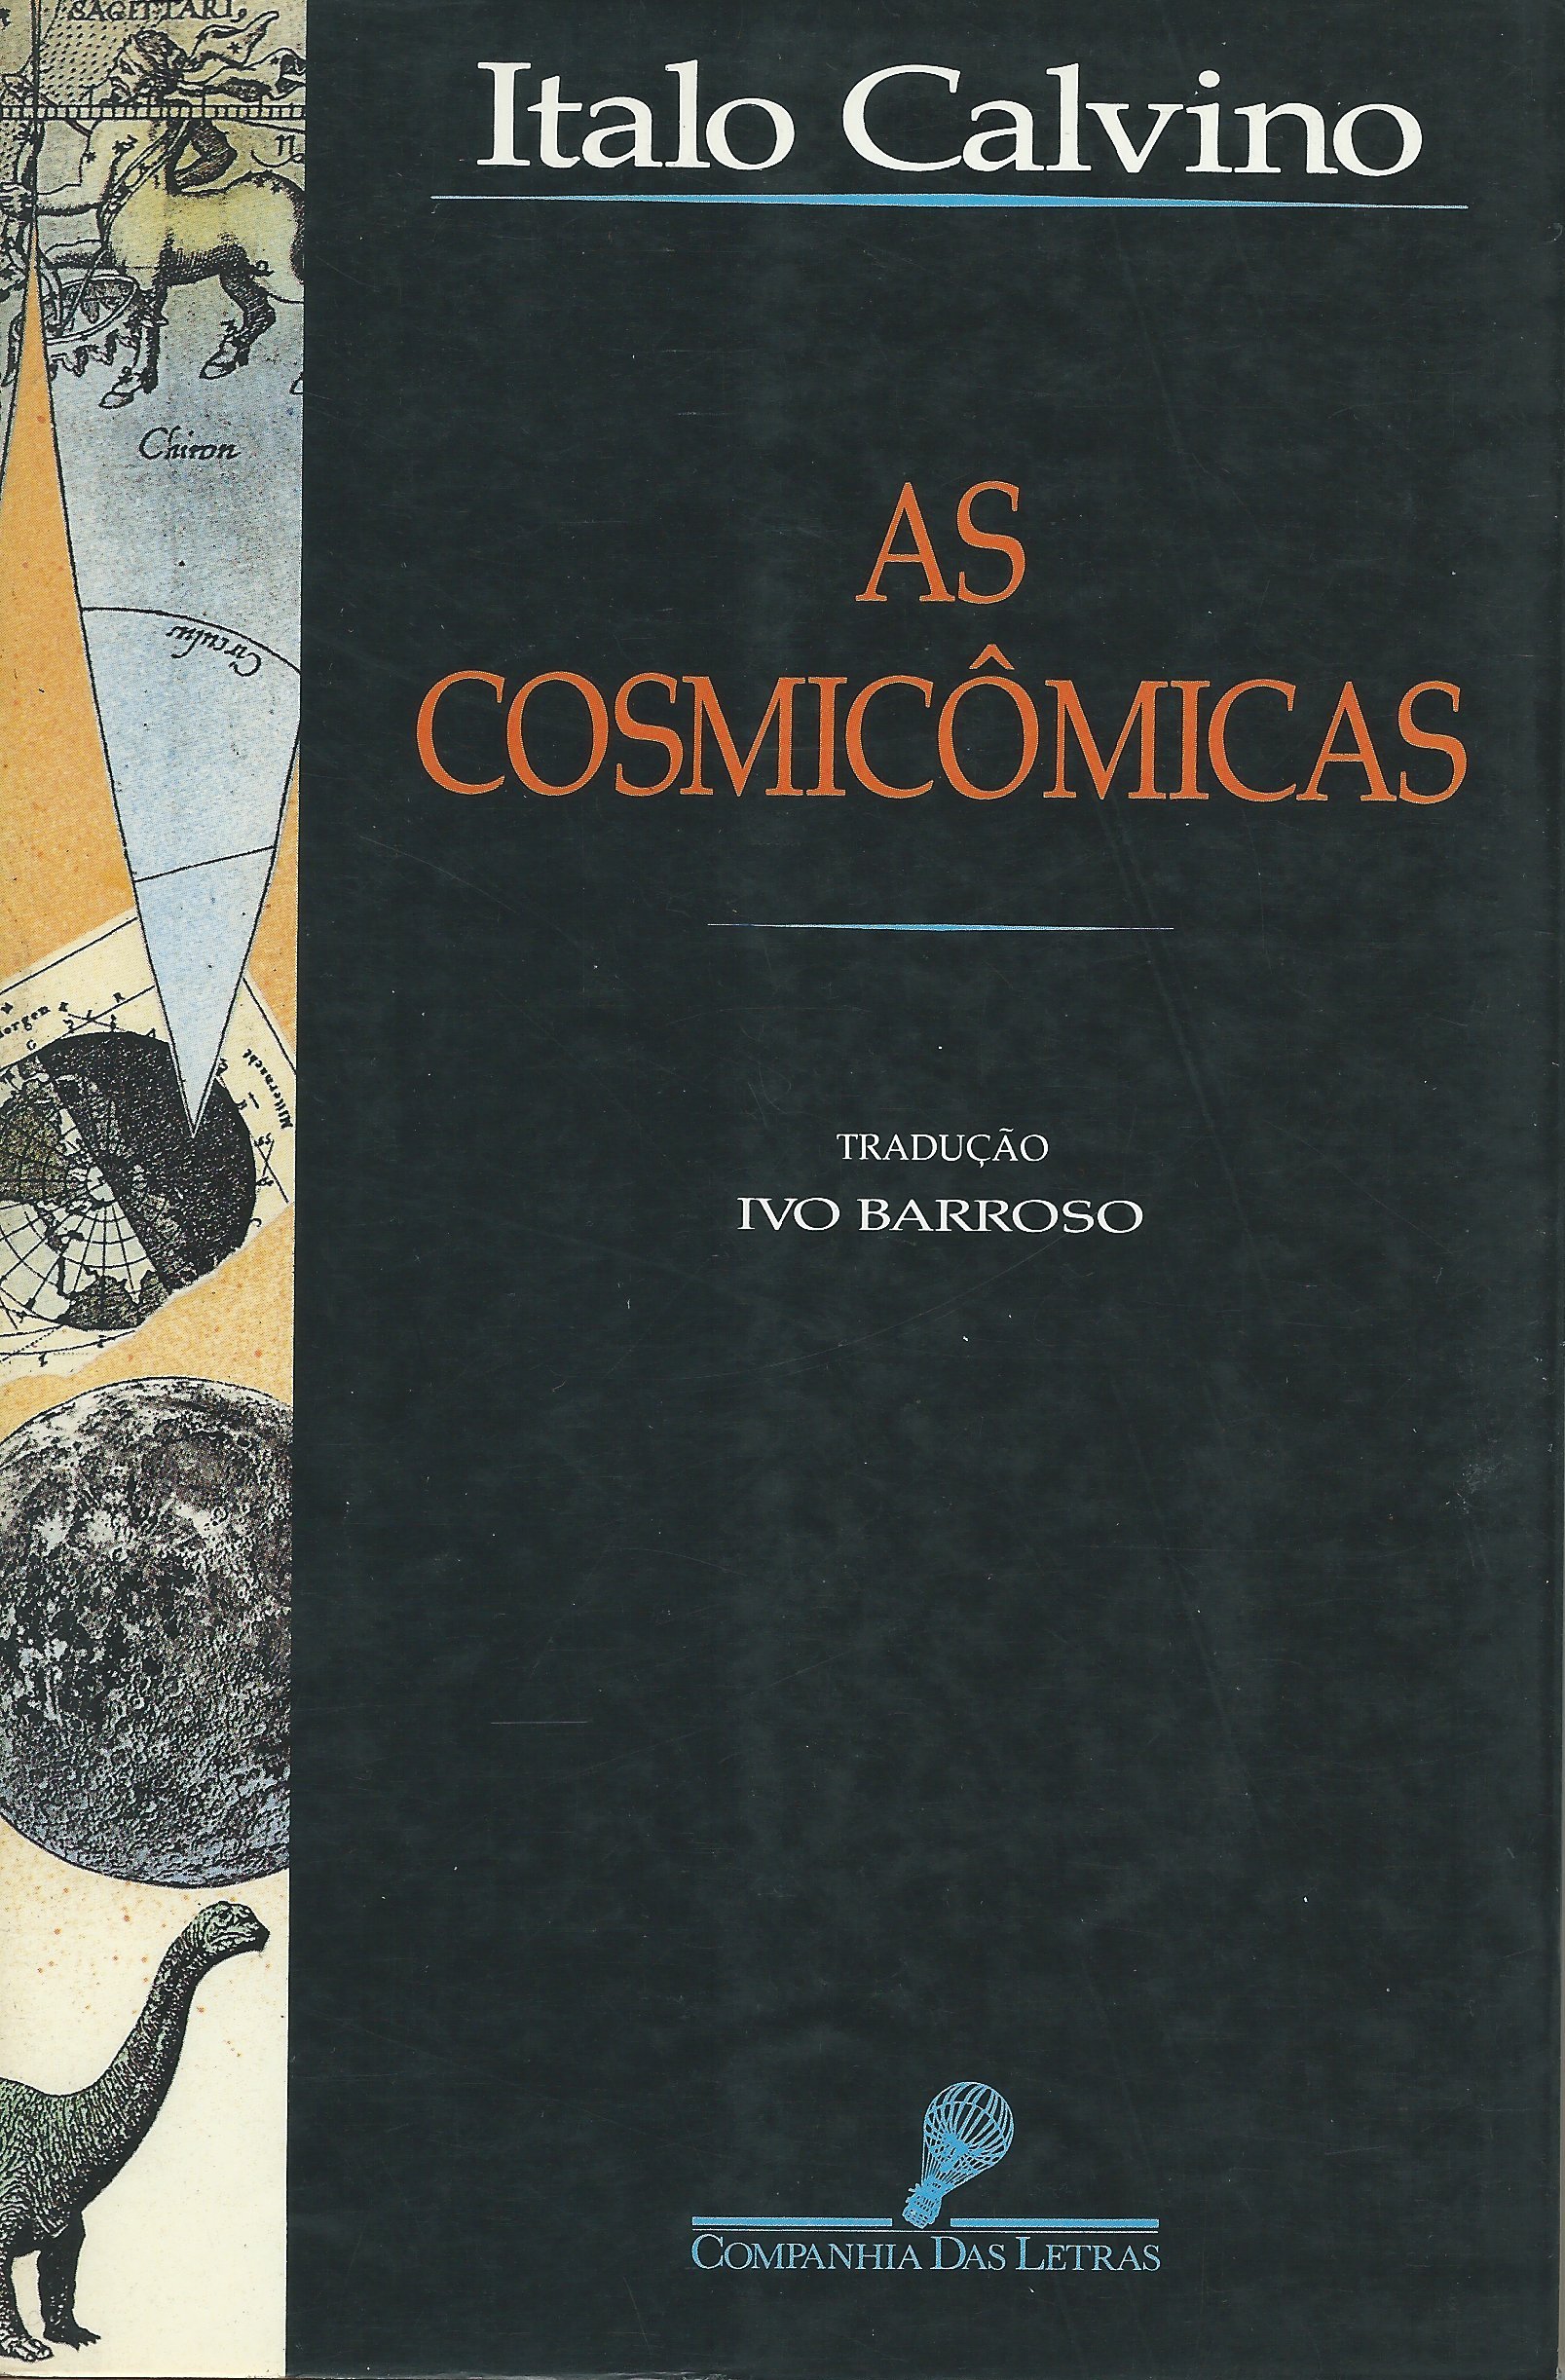 https://www.literaturabrasileira.ufsc.br/_images/obras/as_cosmicomicas_-_calvino_-_cia_das_letras.jpg